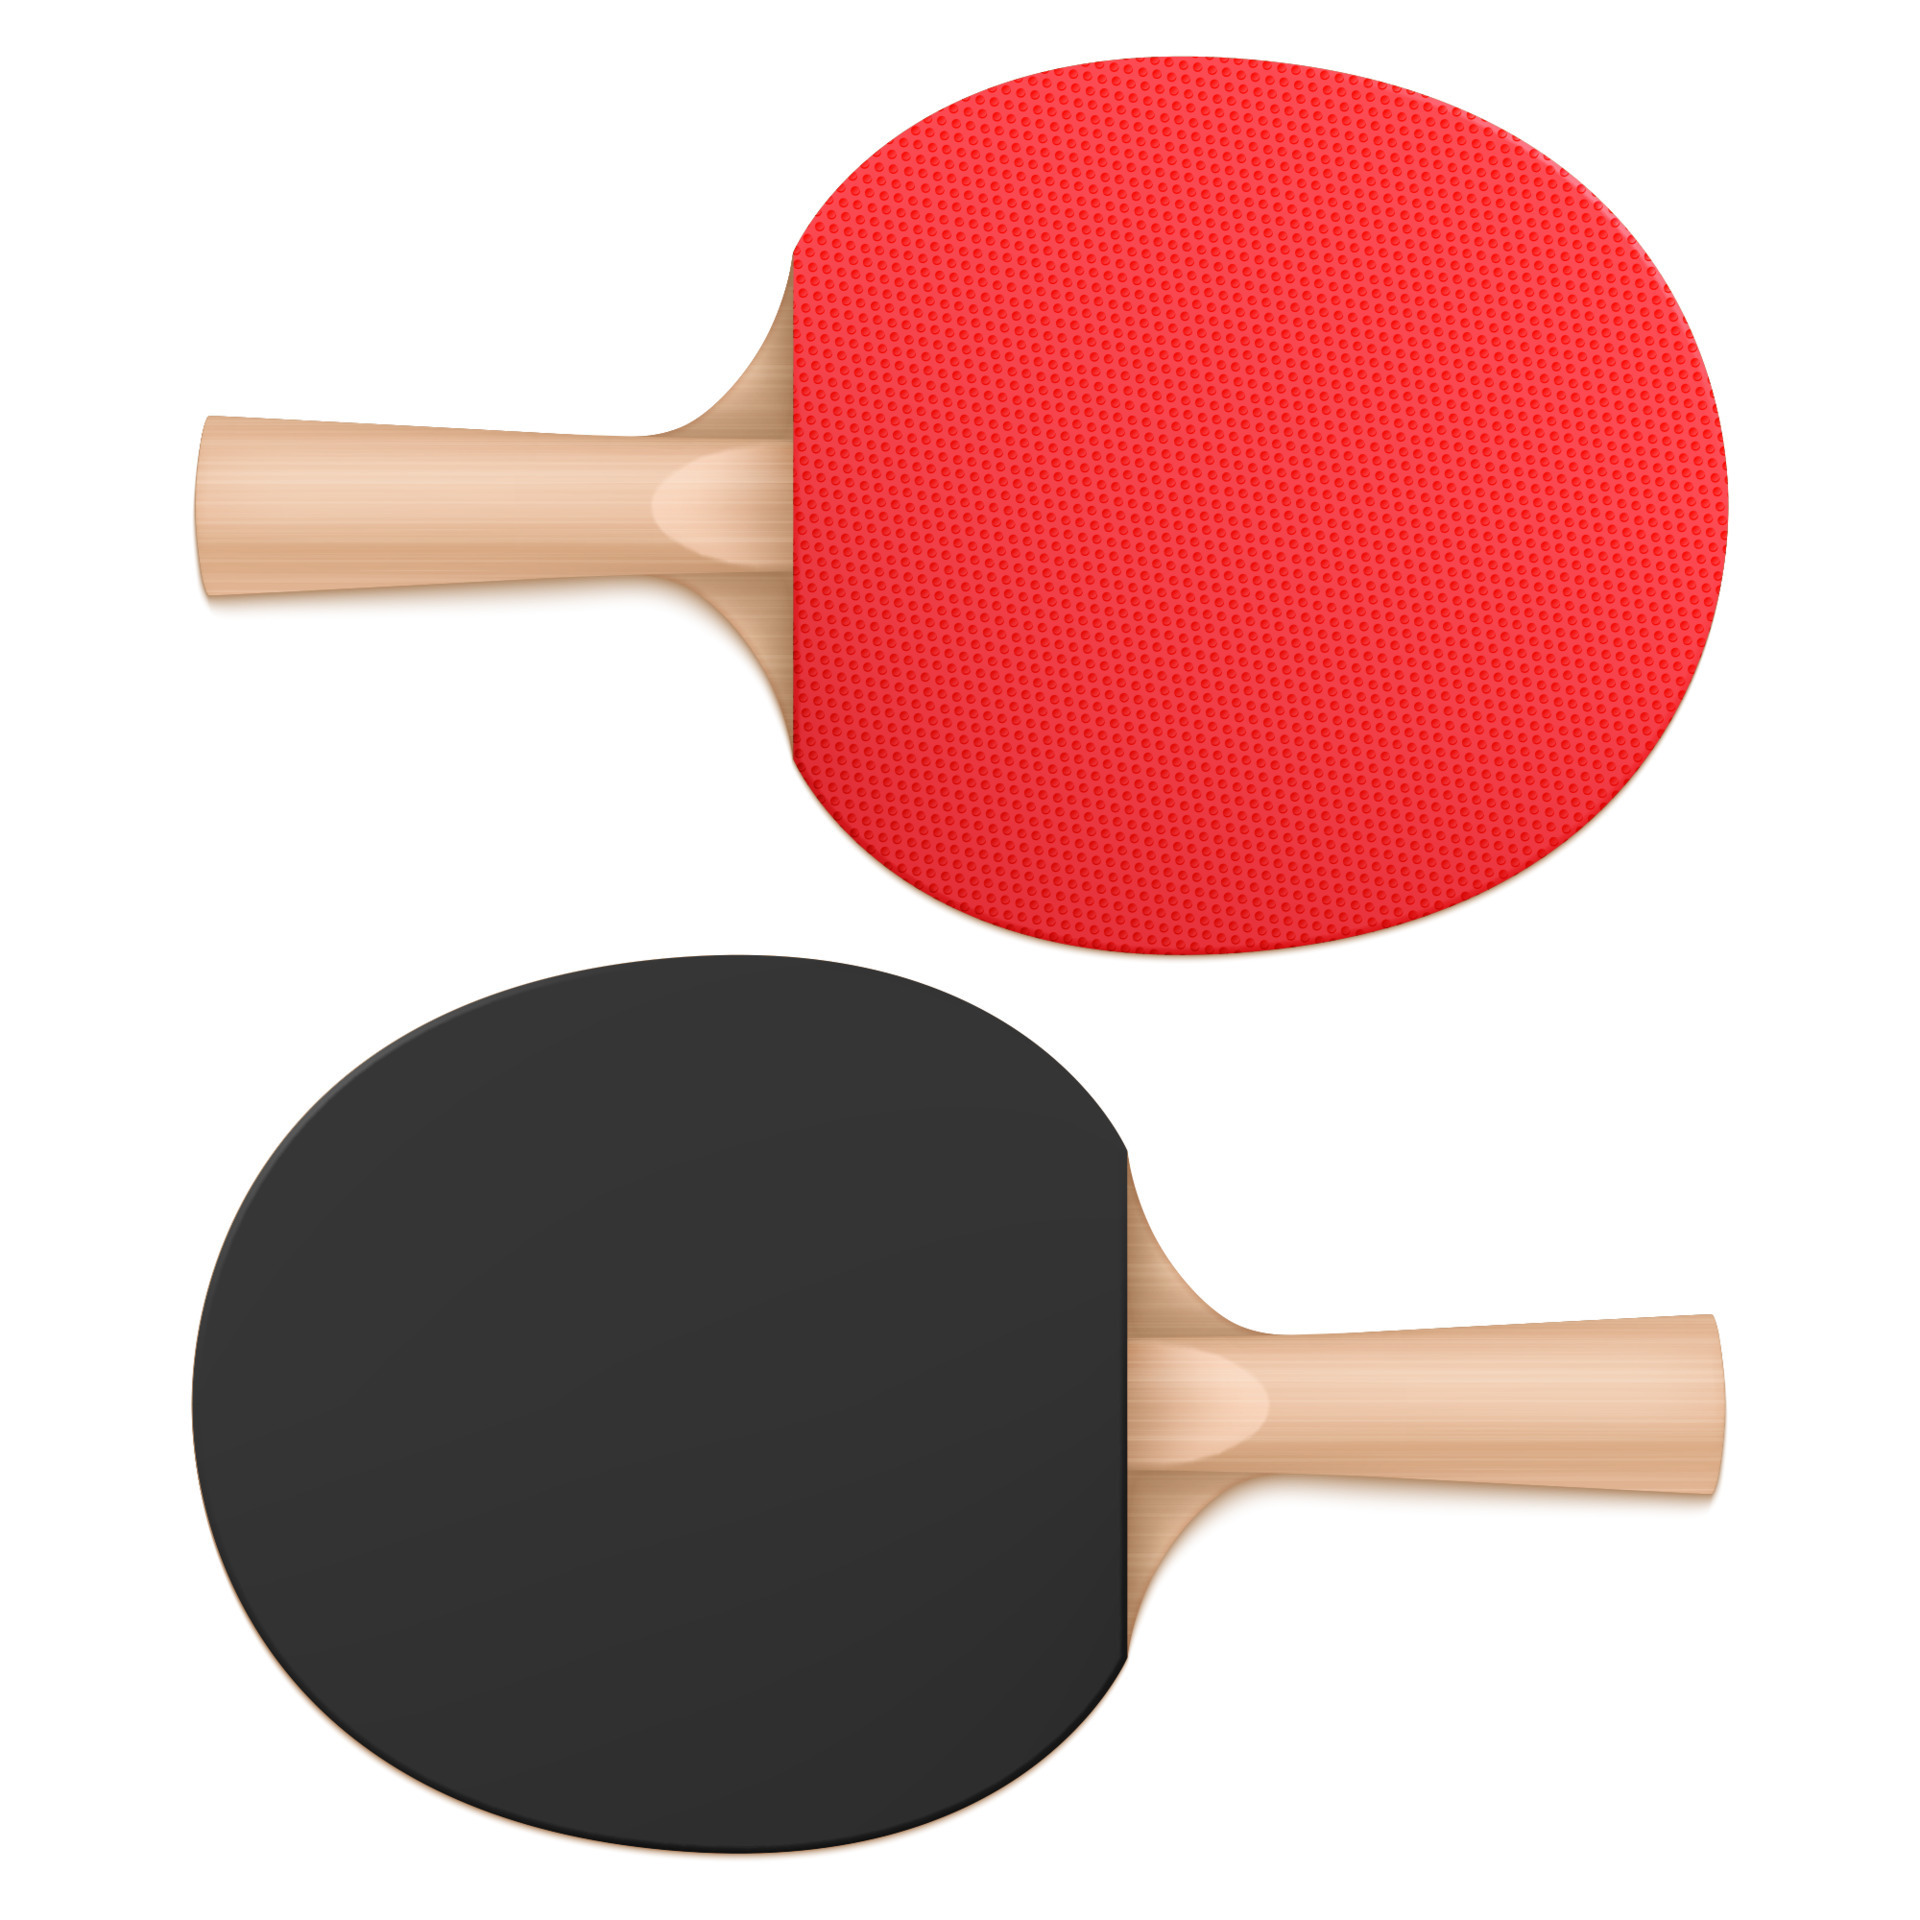 https://static.vecteezy.com/ti/vecteur-libre/p3/15117746-raquettes-de-ping-pong-raquettes-de-tennis-de-table-vue-de-dessus-gratuit-vectoriel.jpg